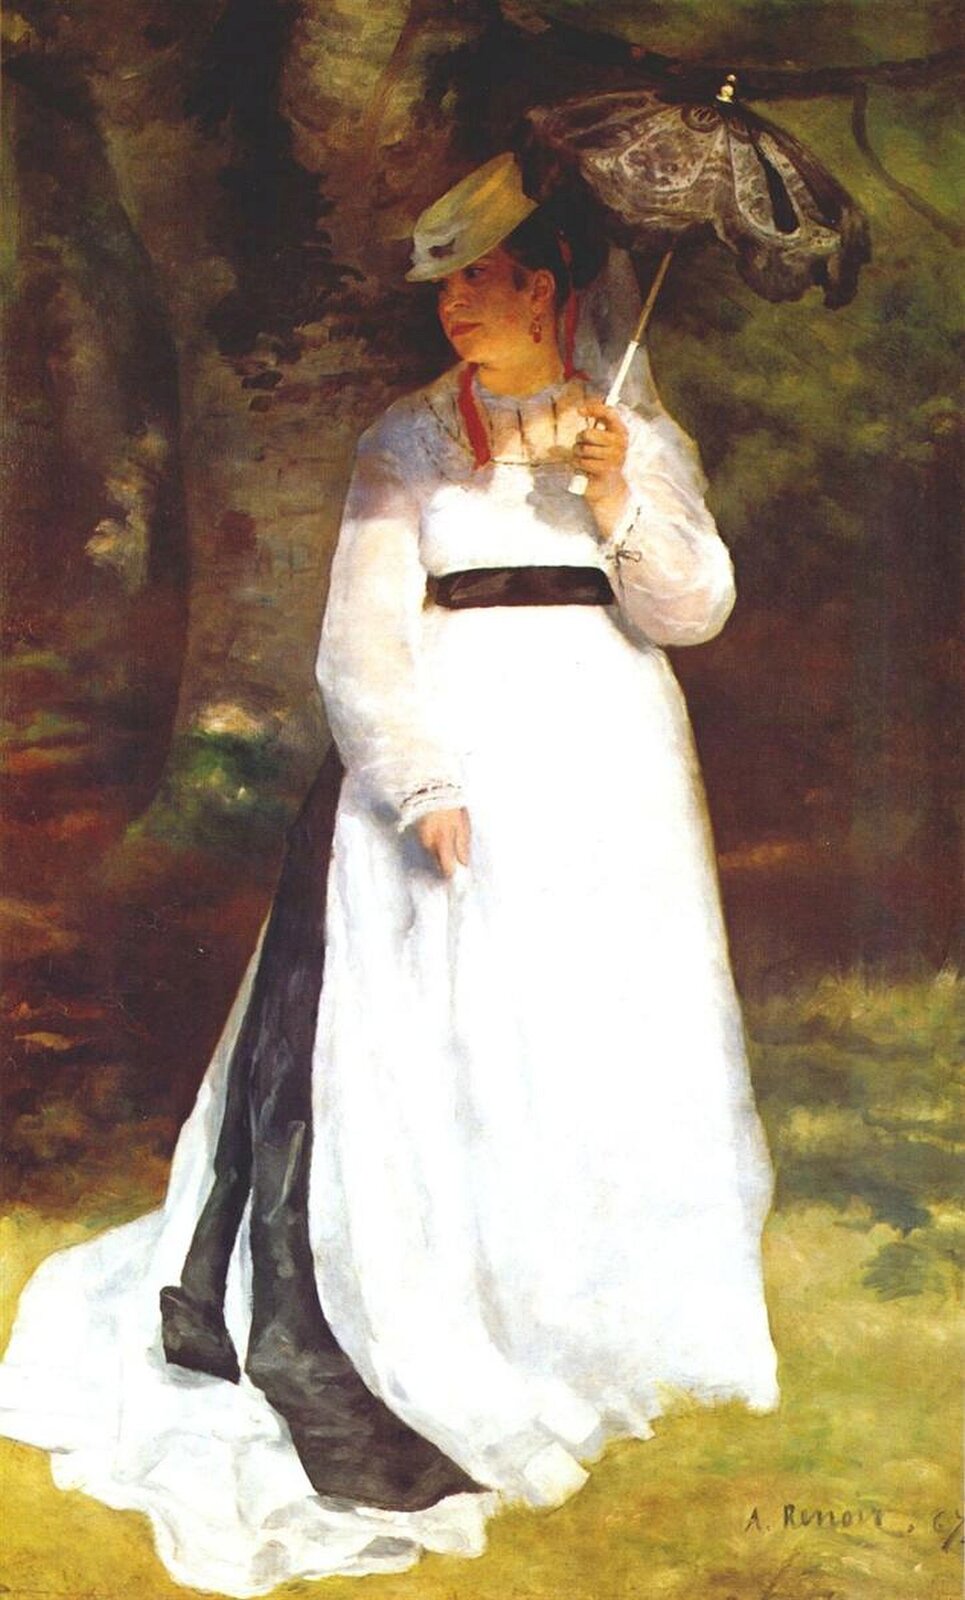 Ilustracja o kształcie pionowego prostokąta przedstawia obraz Auguste Renoira „Lisa z parasolką”. Ukazuje elegancką kobietę, ubraną w białą suknie. Kobieta przechadza się po parku. W lewej ręce trzyma mały parasol, który chroni ją przed słońcem.